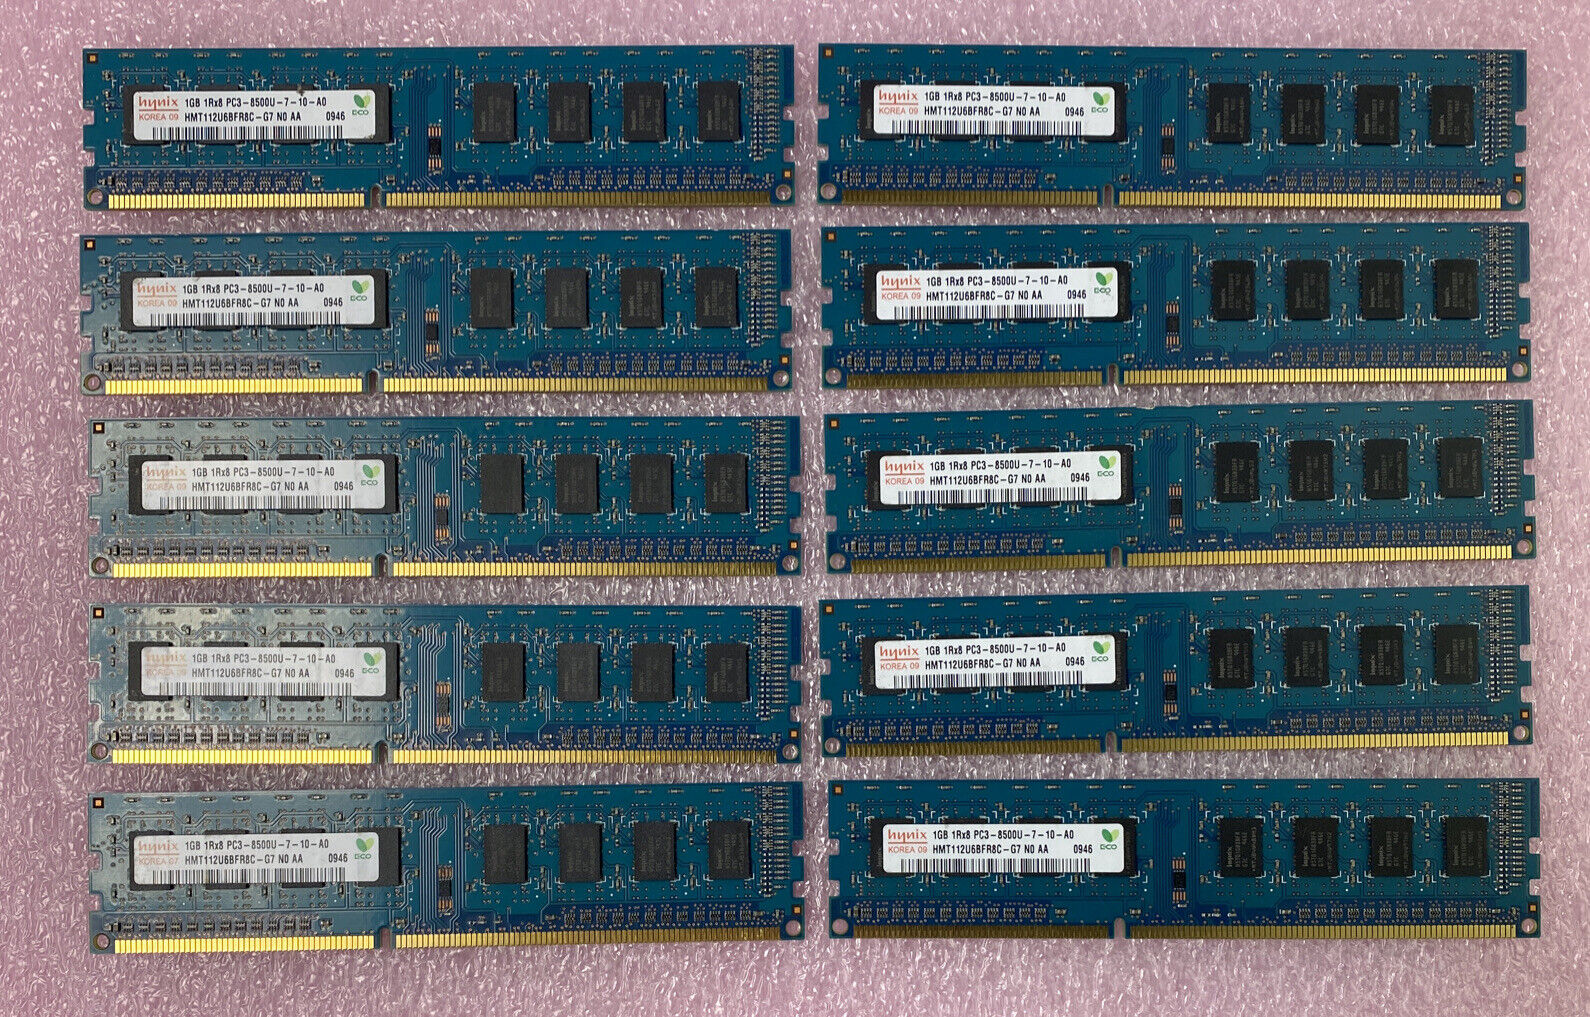 Lot( 10 ) 1GB Hynix HMT112U6BFR8C-G7 1Rx8 PC3-8500U DDR3 non-ECC Desktop RAM